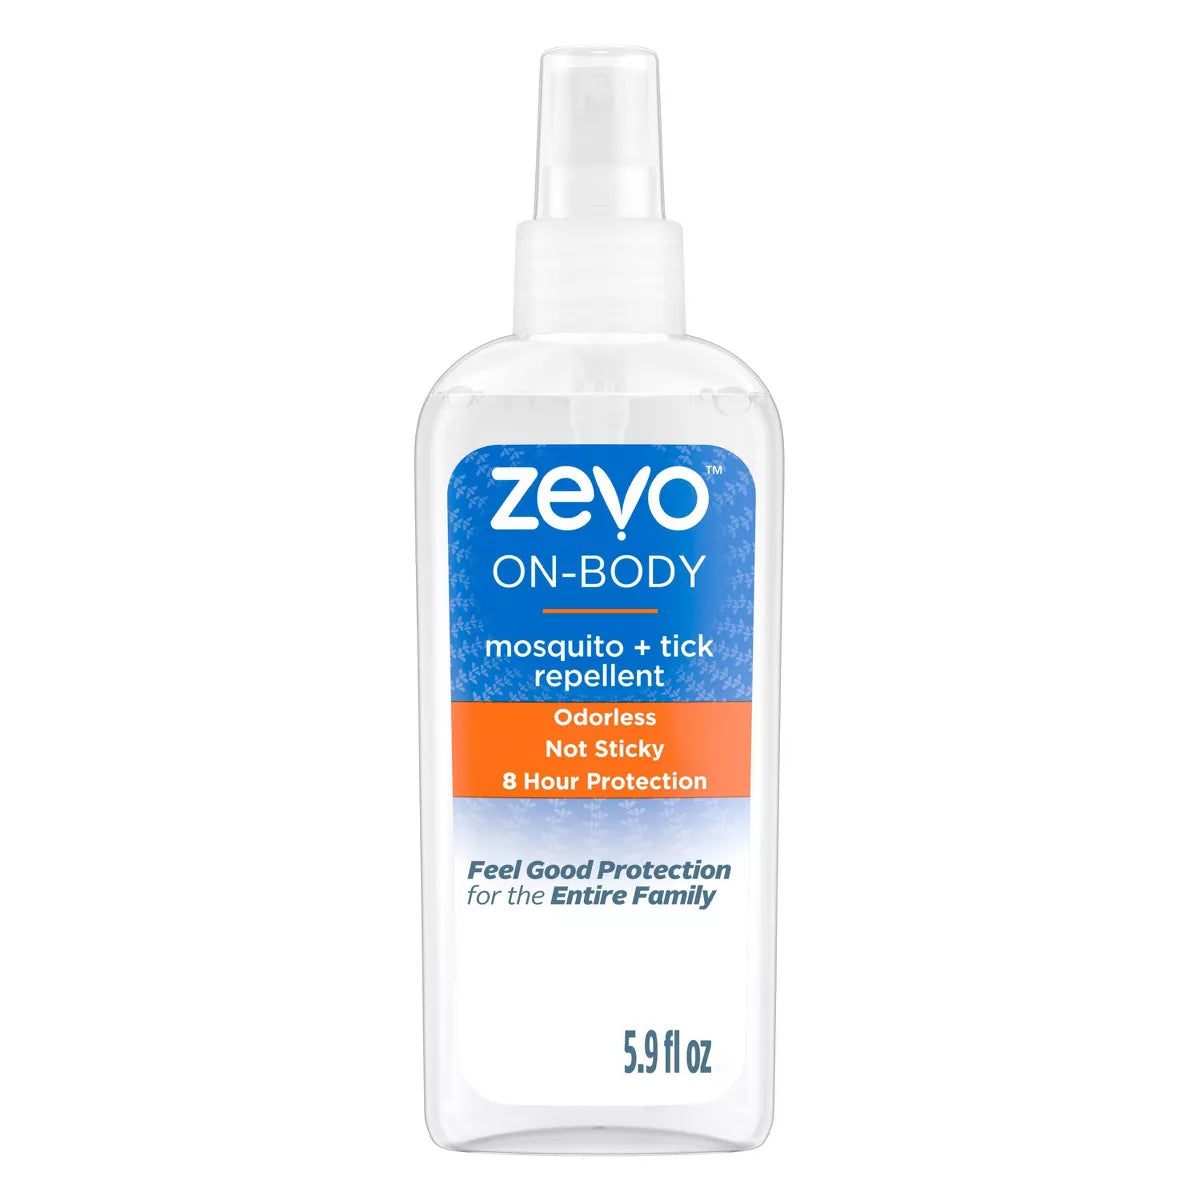 Zevo On-Body Mosquito and Tick Repellent Pump Spray – 5.9oz